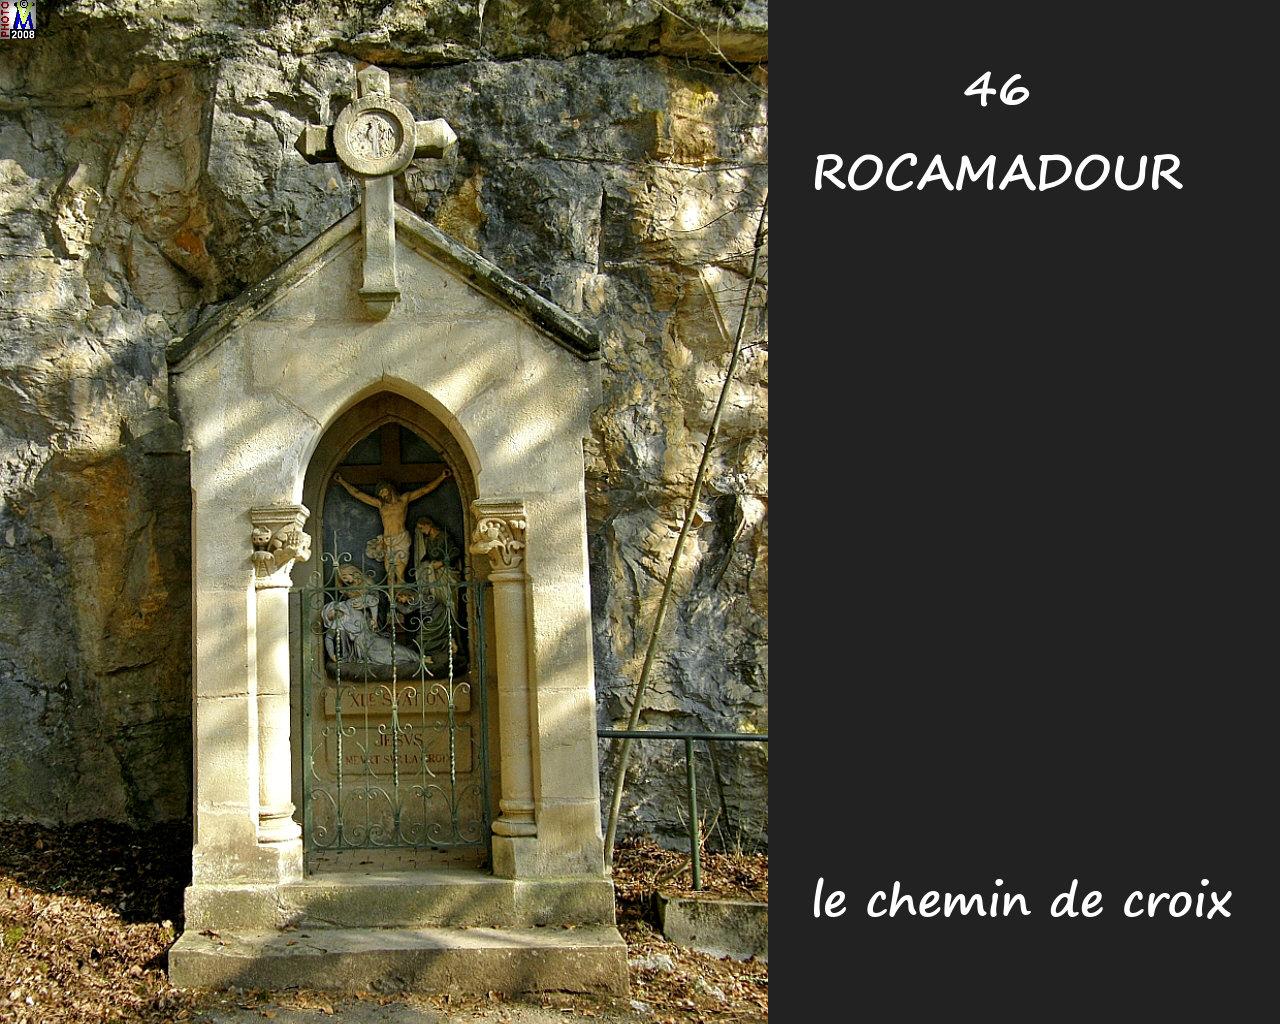 46ROCAMADOUR_croix_200.jpg